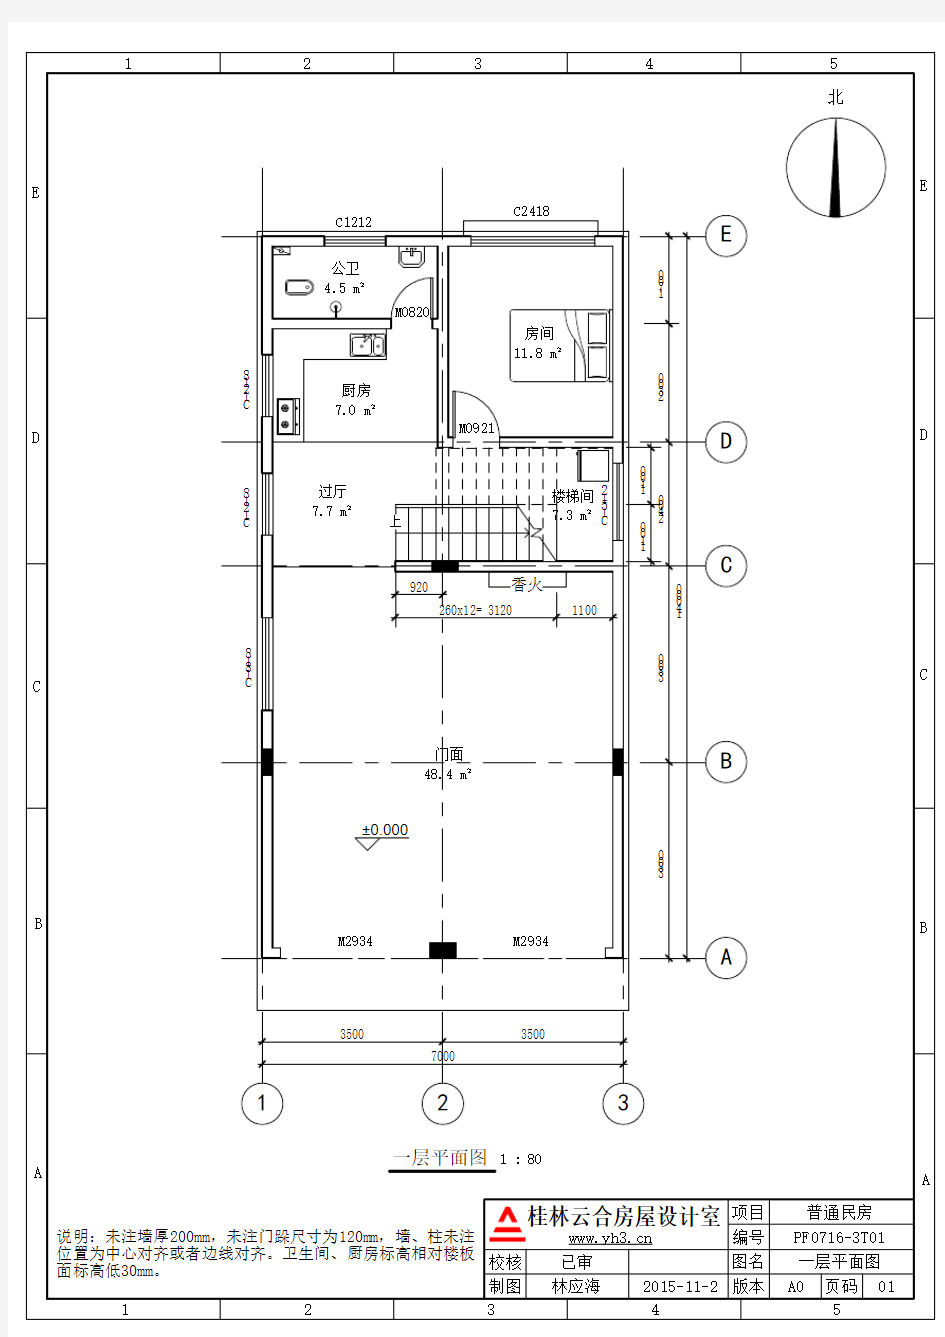 7x14 三层农村自建楼房设计图平面布局图户型图